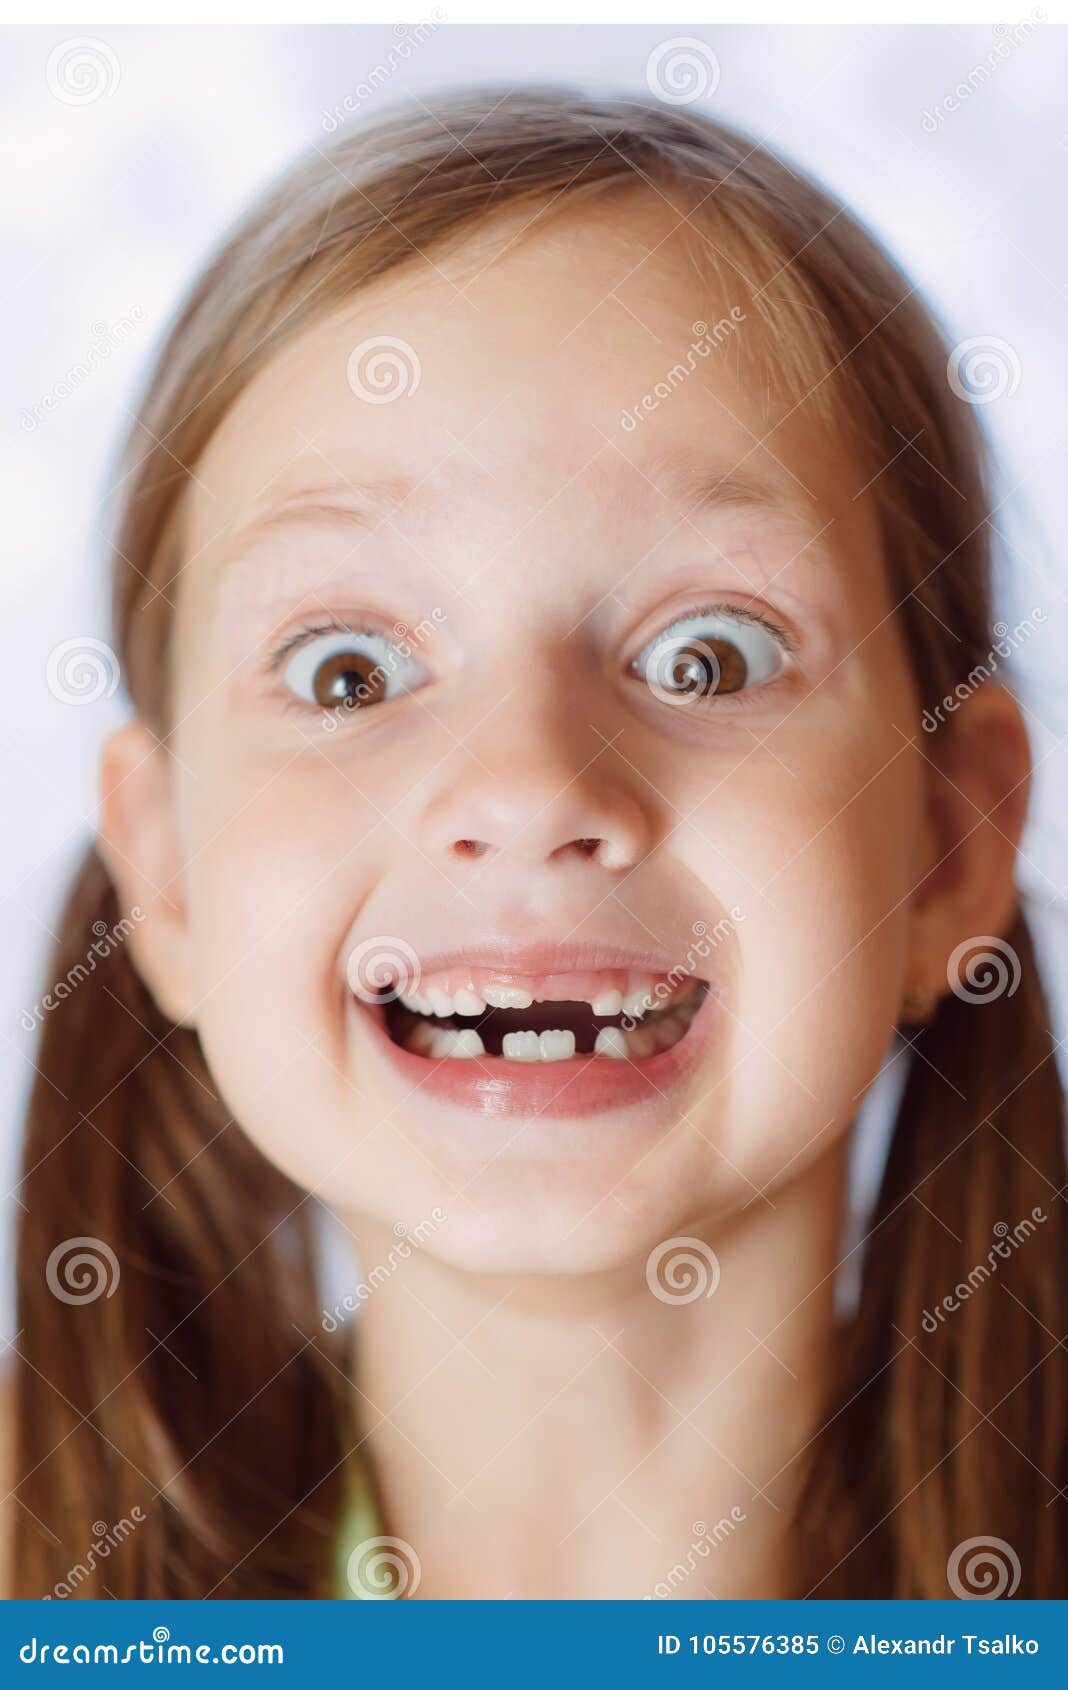 юной девочке сперму в рот фото 33